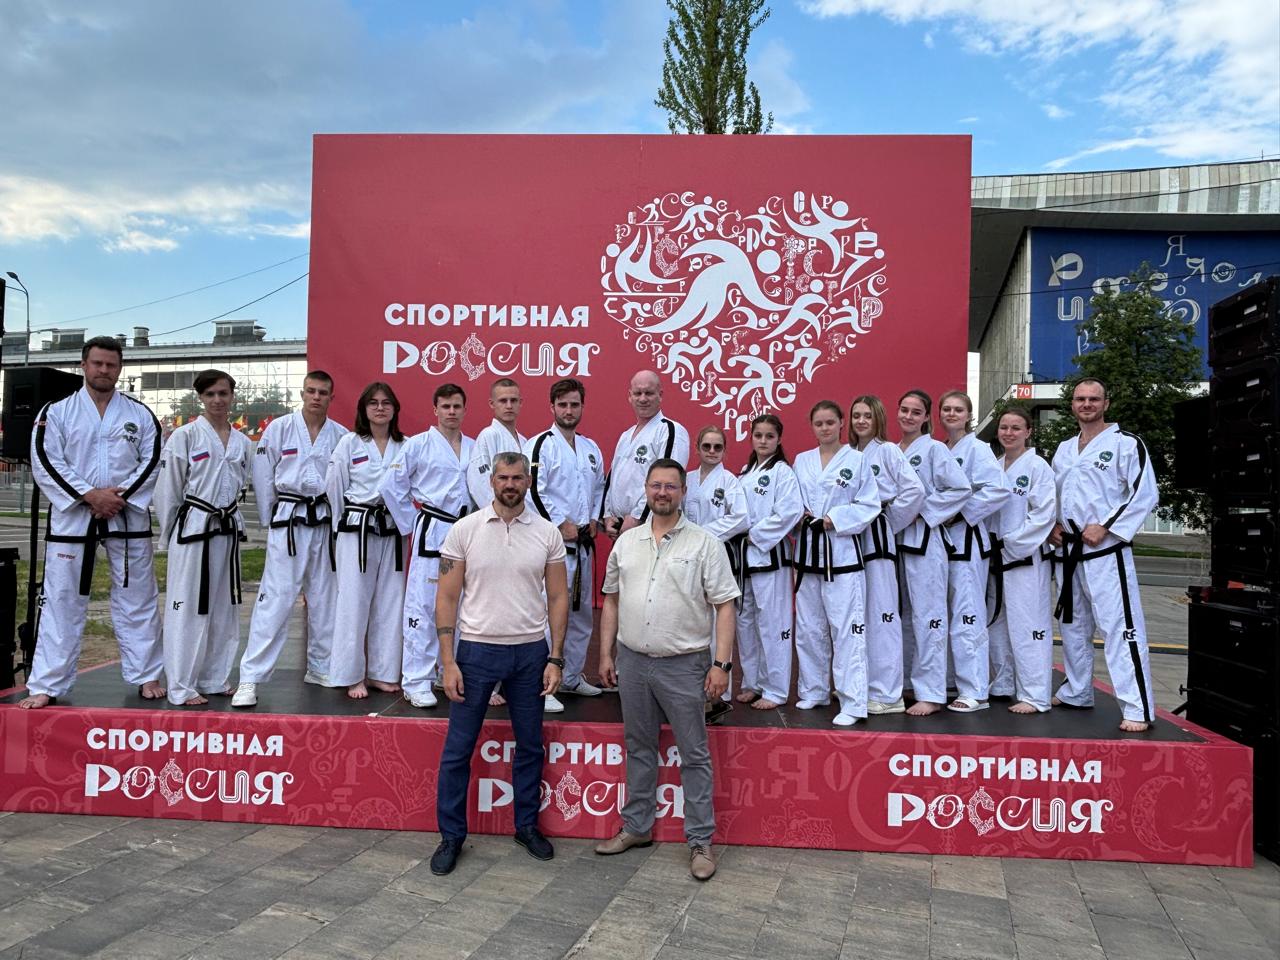 2 июня на Международной выставке-форуме «Россия» на ВДНХ прошел Московский Фестиваль боевых искусств.